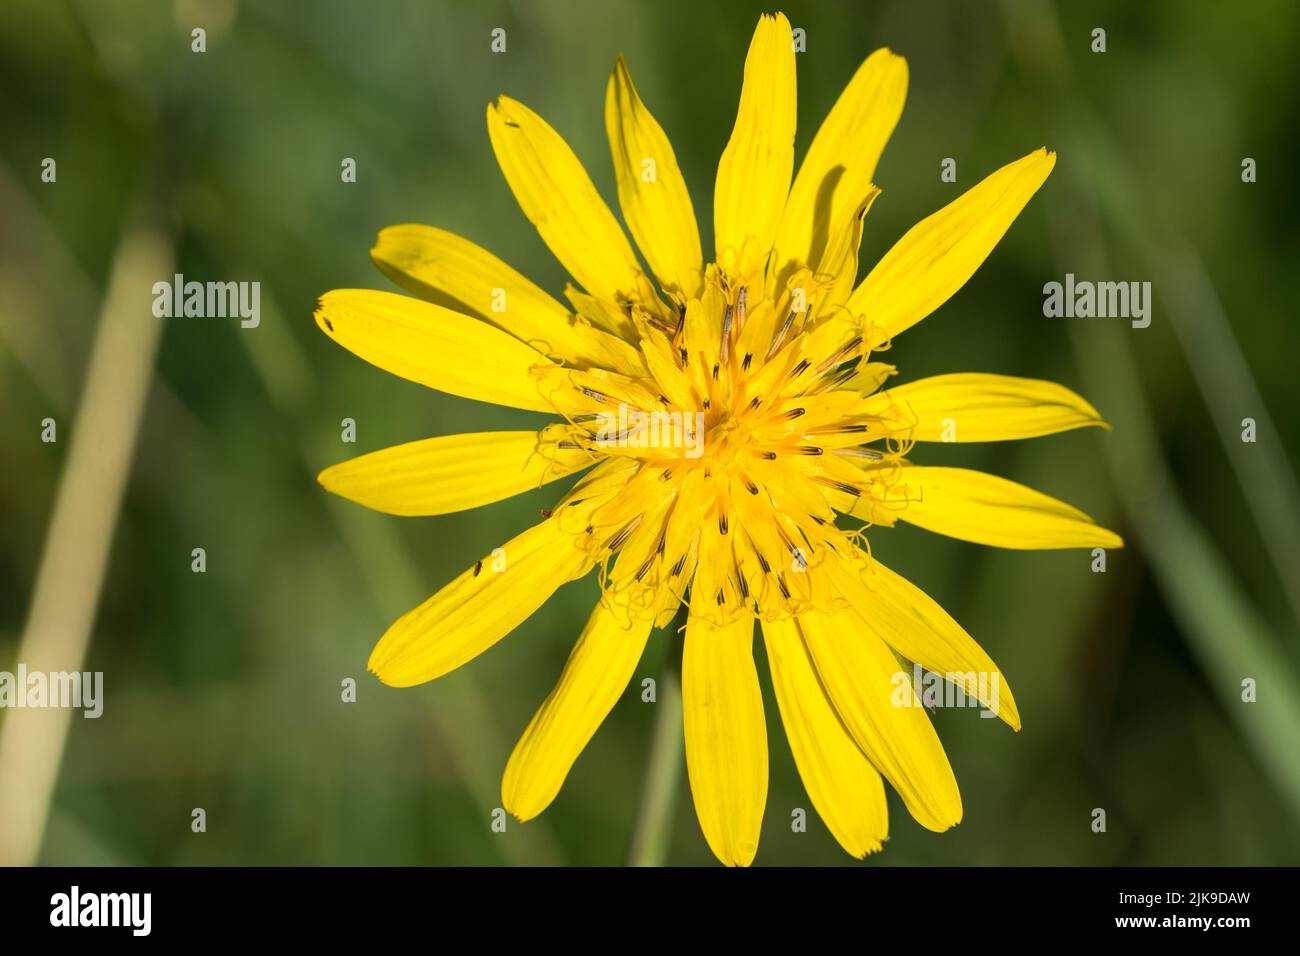 Tragopogon, la flor amarilla de la barba de dos días en la pradera closeup selctive focus Foto de stock